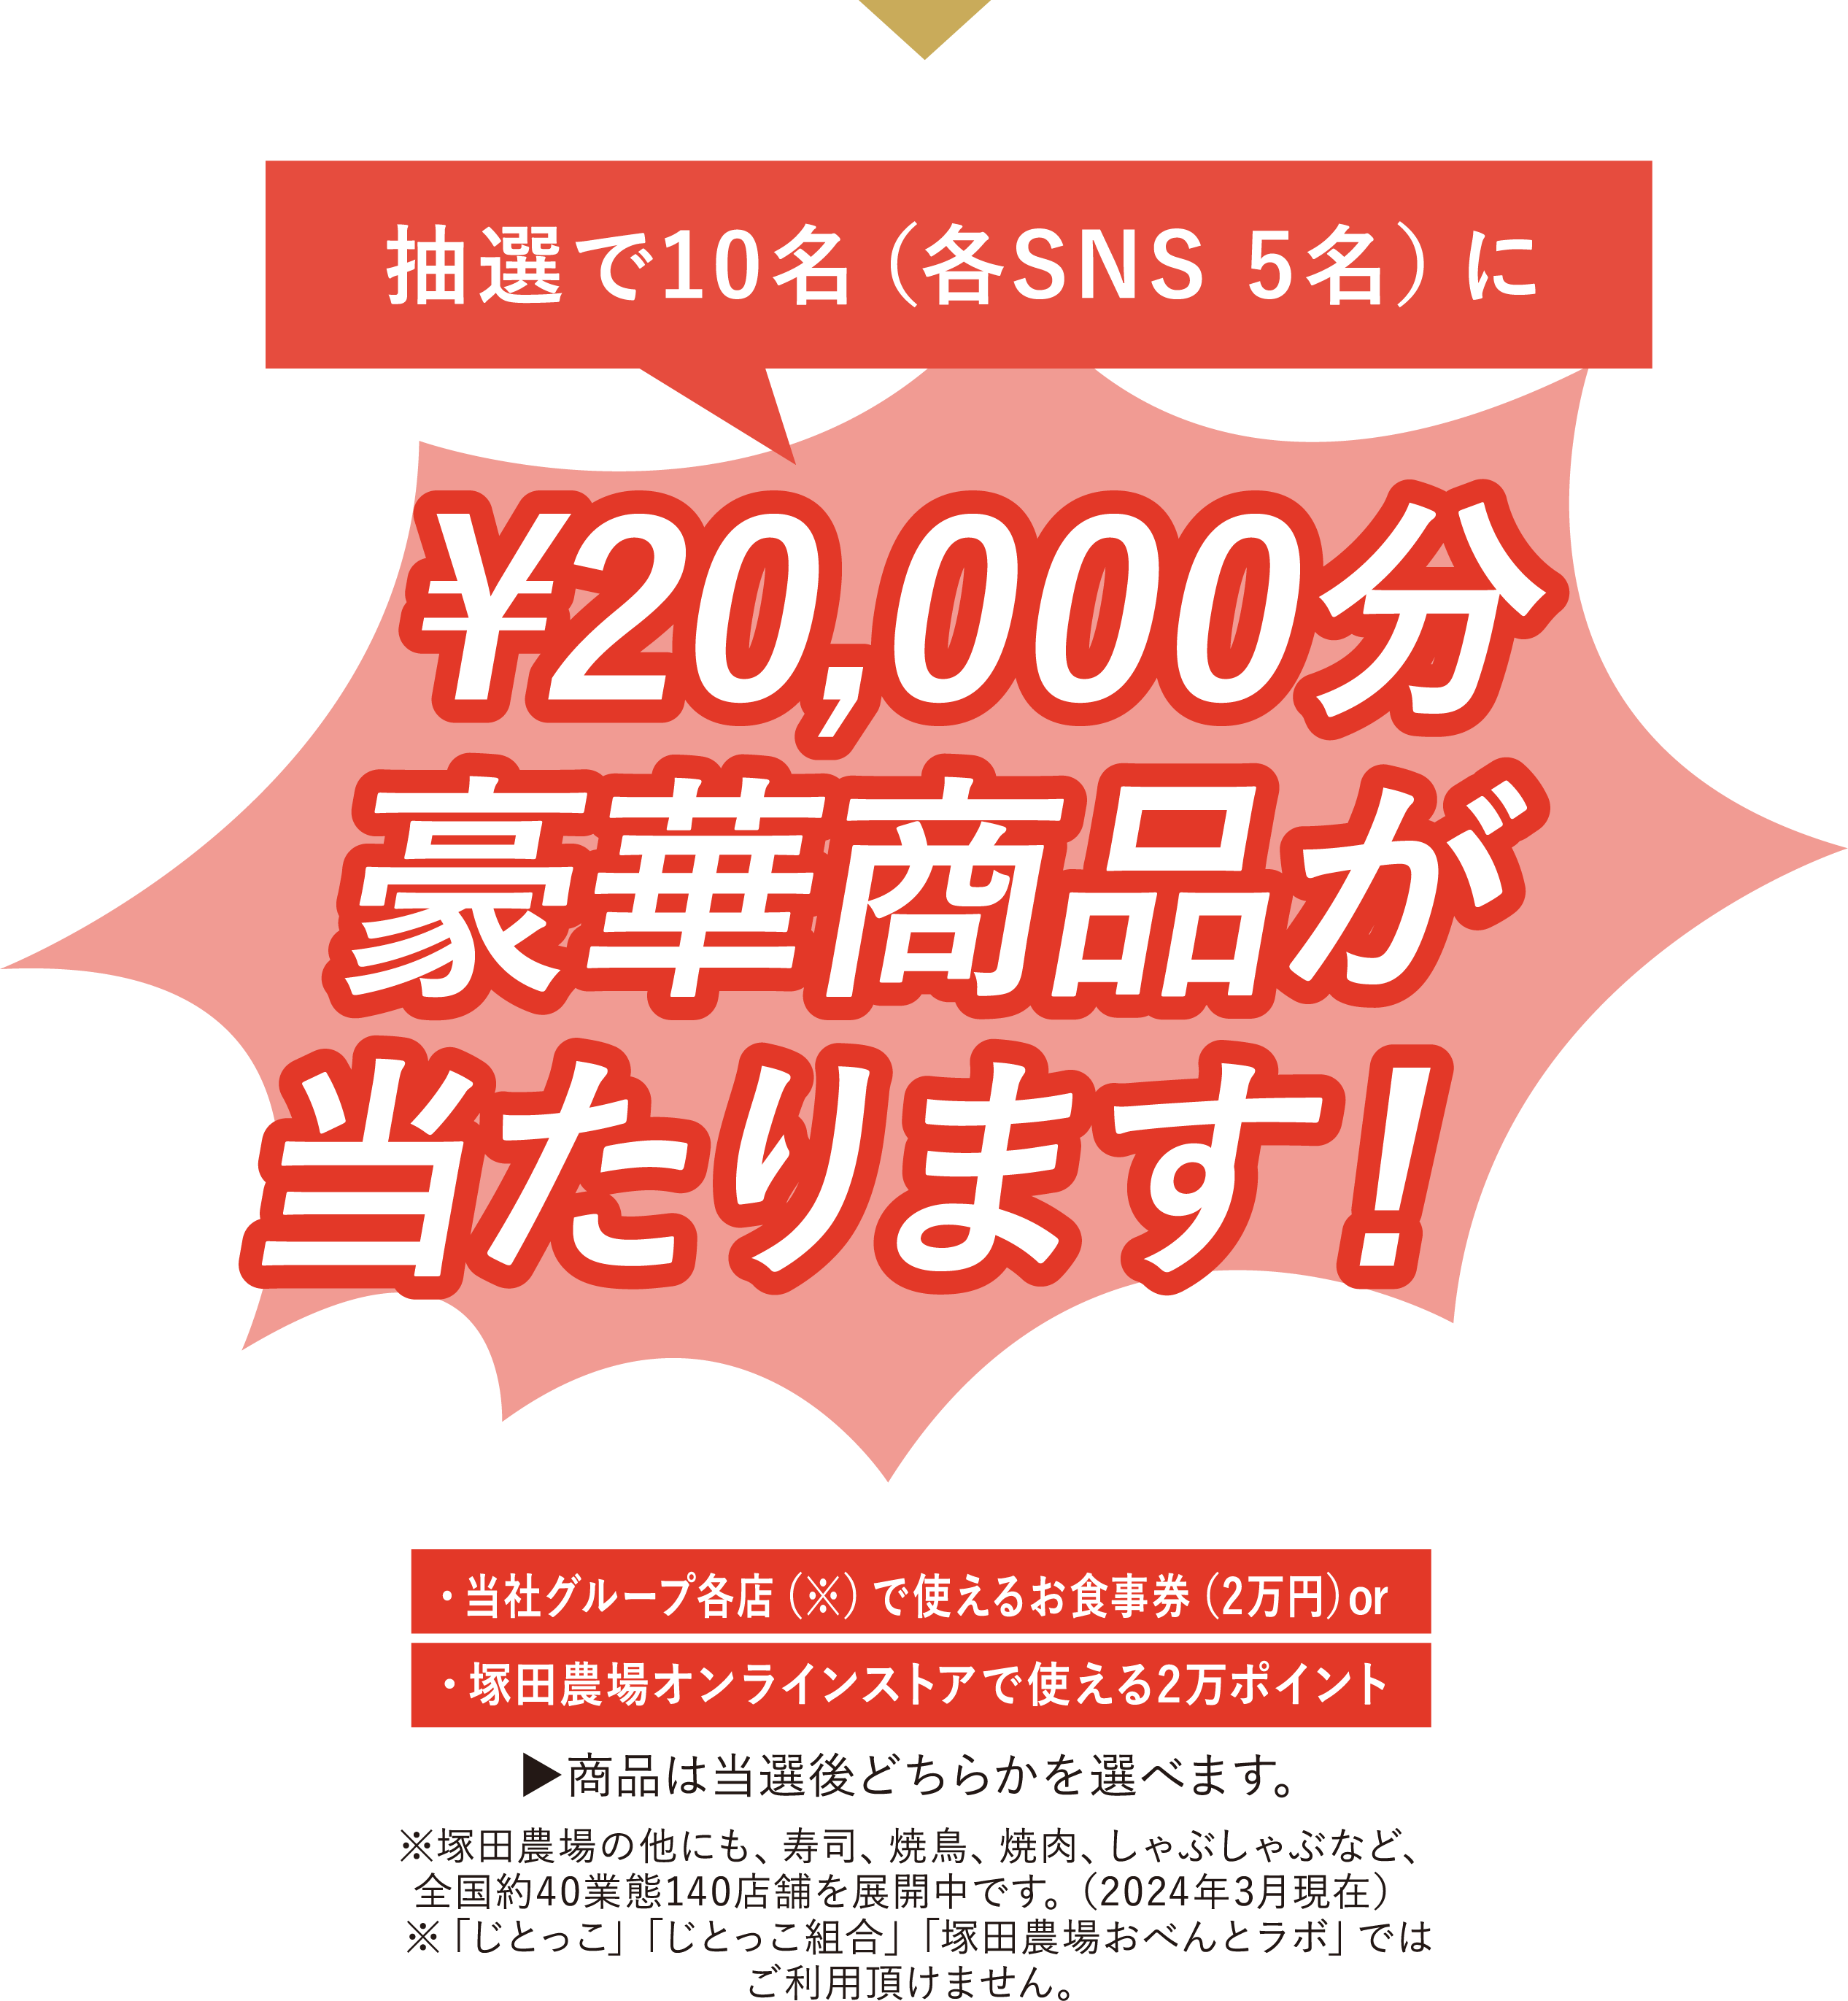 塚田農場のお弁当の写真と、指定のハッシュタグを
                    XかInstagramに投稿し応募すると…抽選で10名（各SNS 5名）に
                    ¥20,000分豪華商品が当たります!